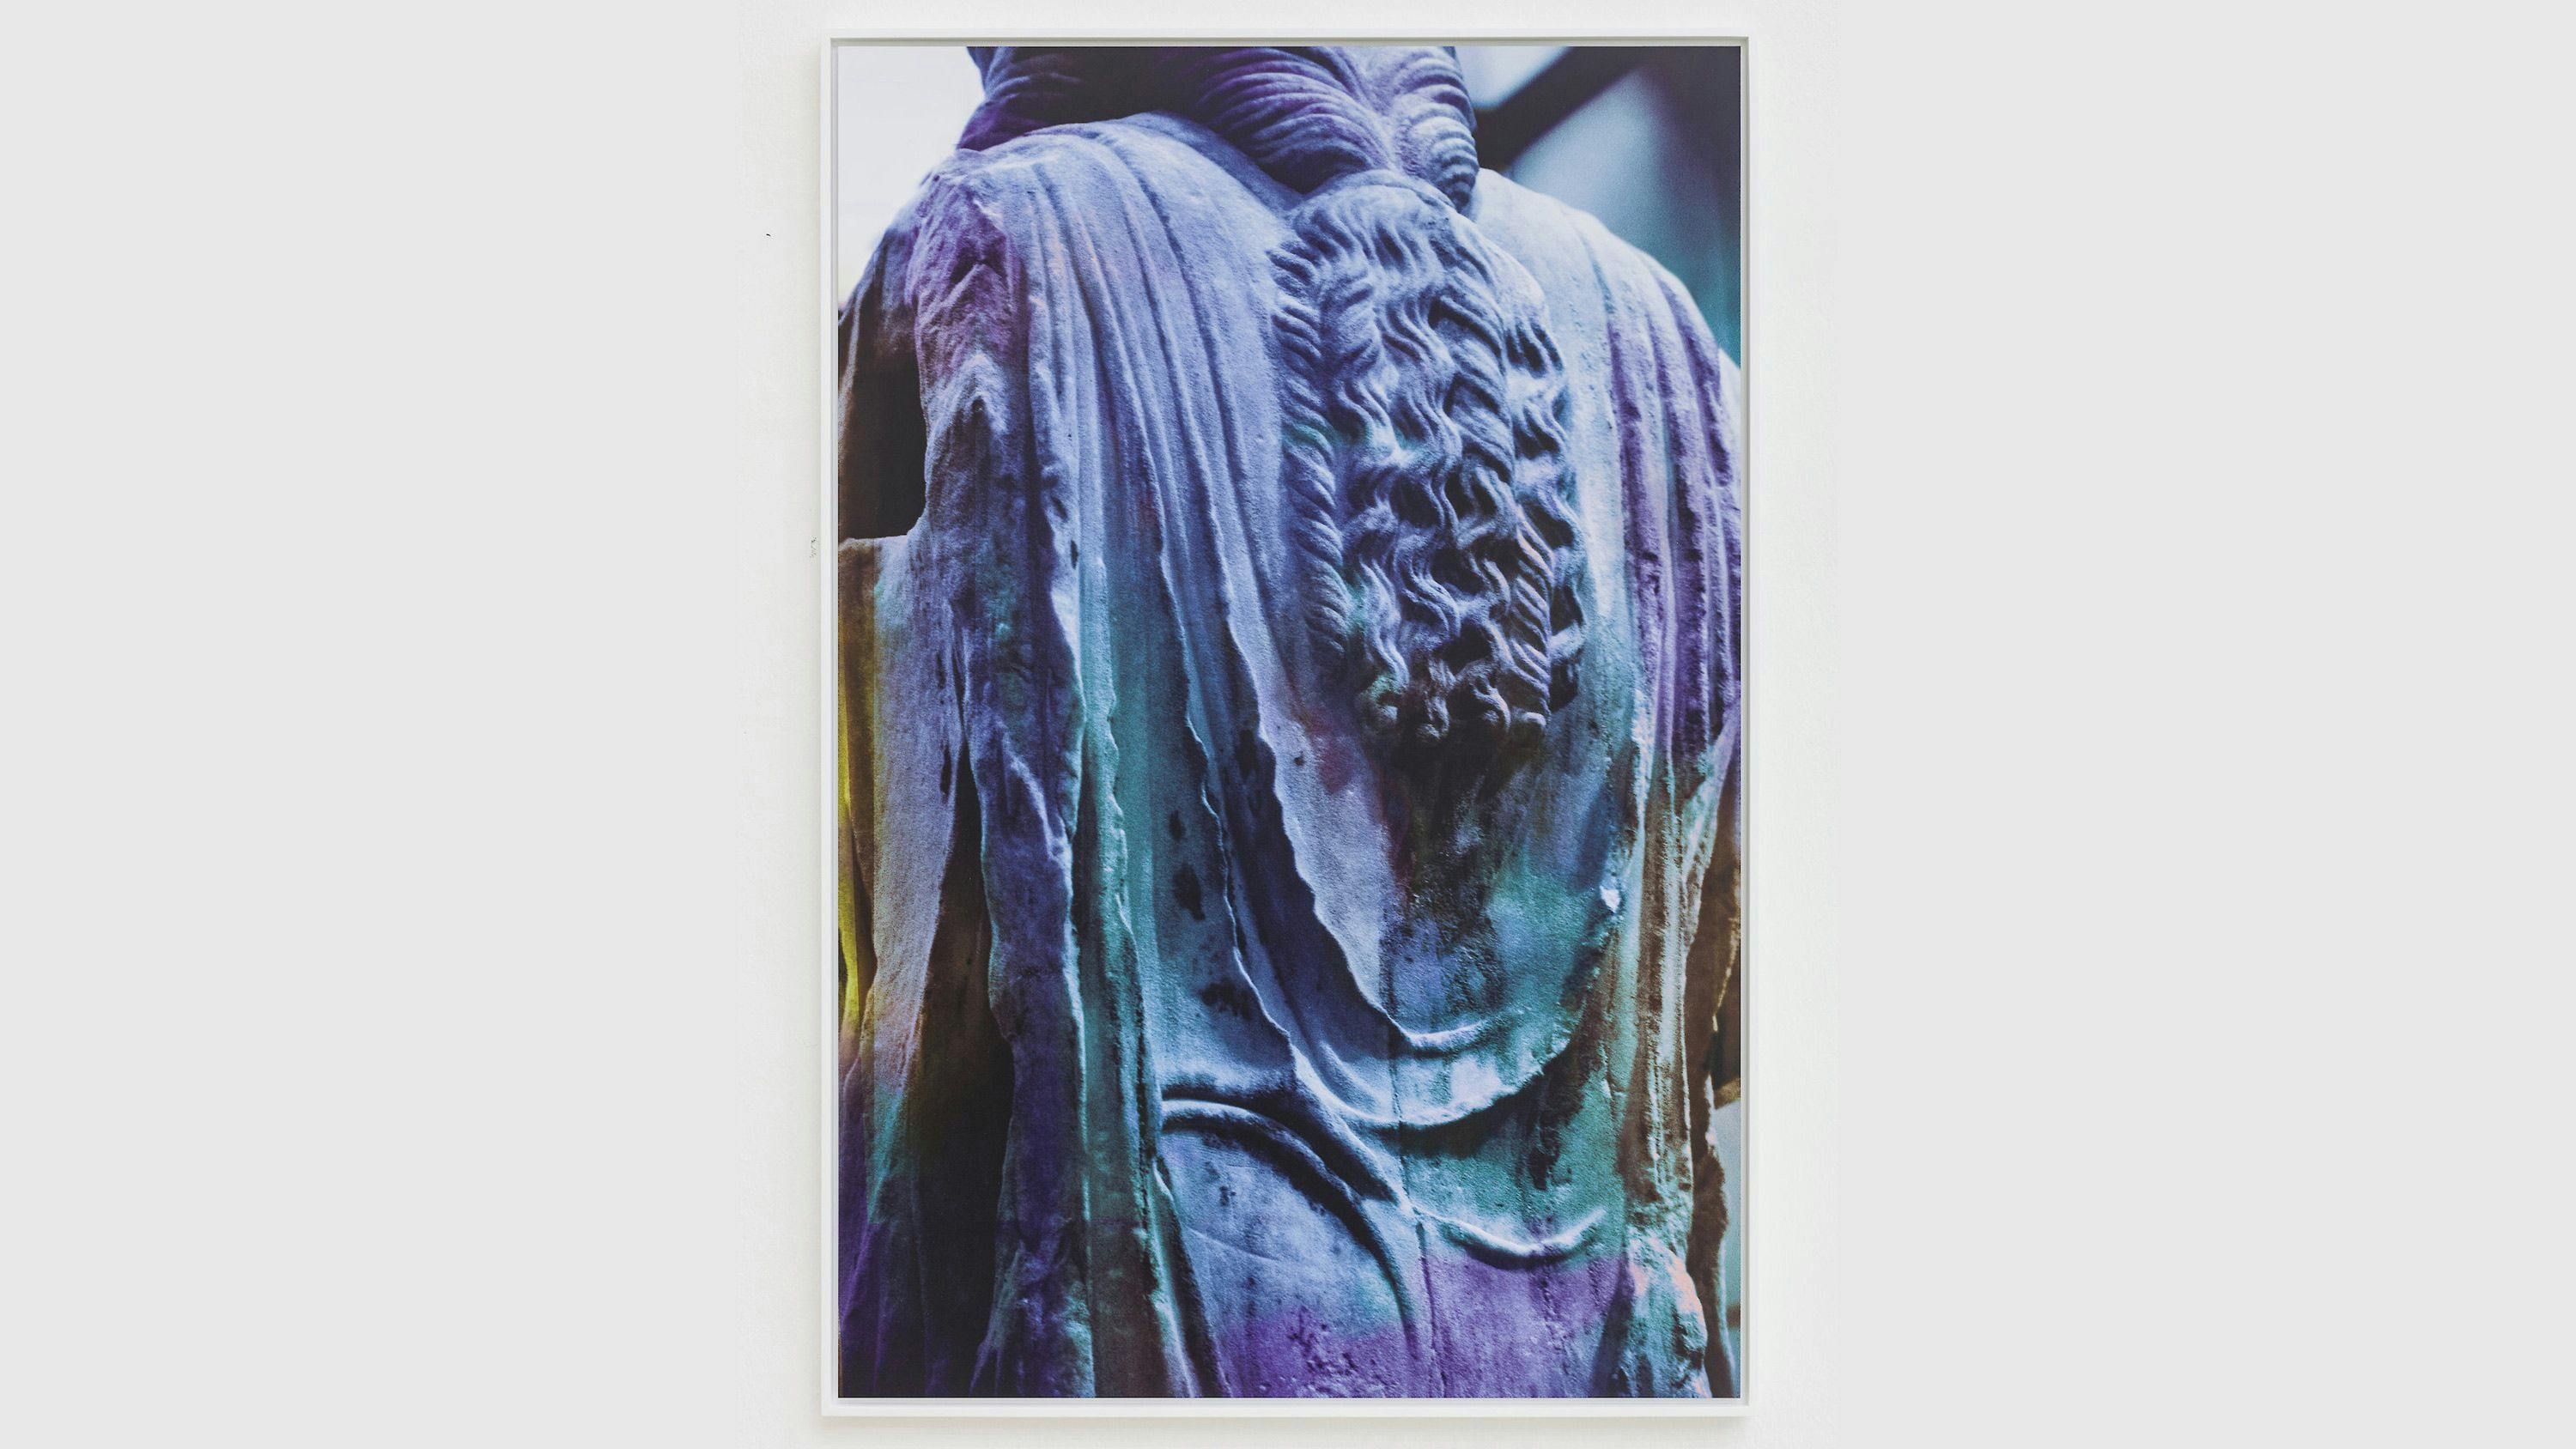 View of James Welling’s 2019 work Acropolis Museum. Karyatid